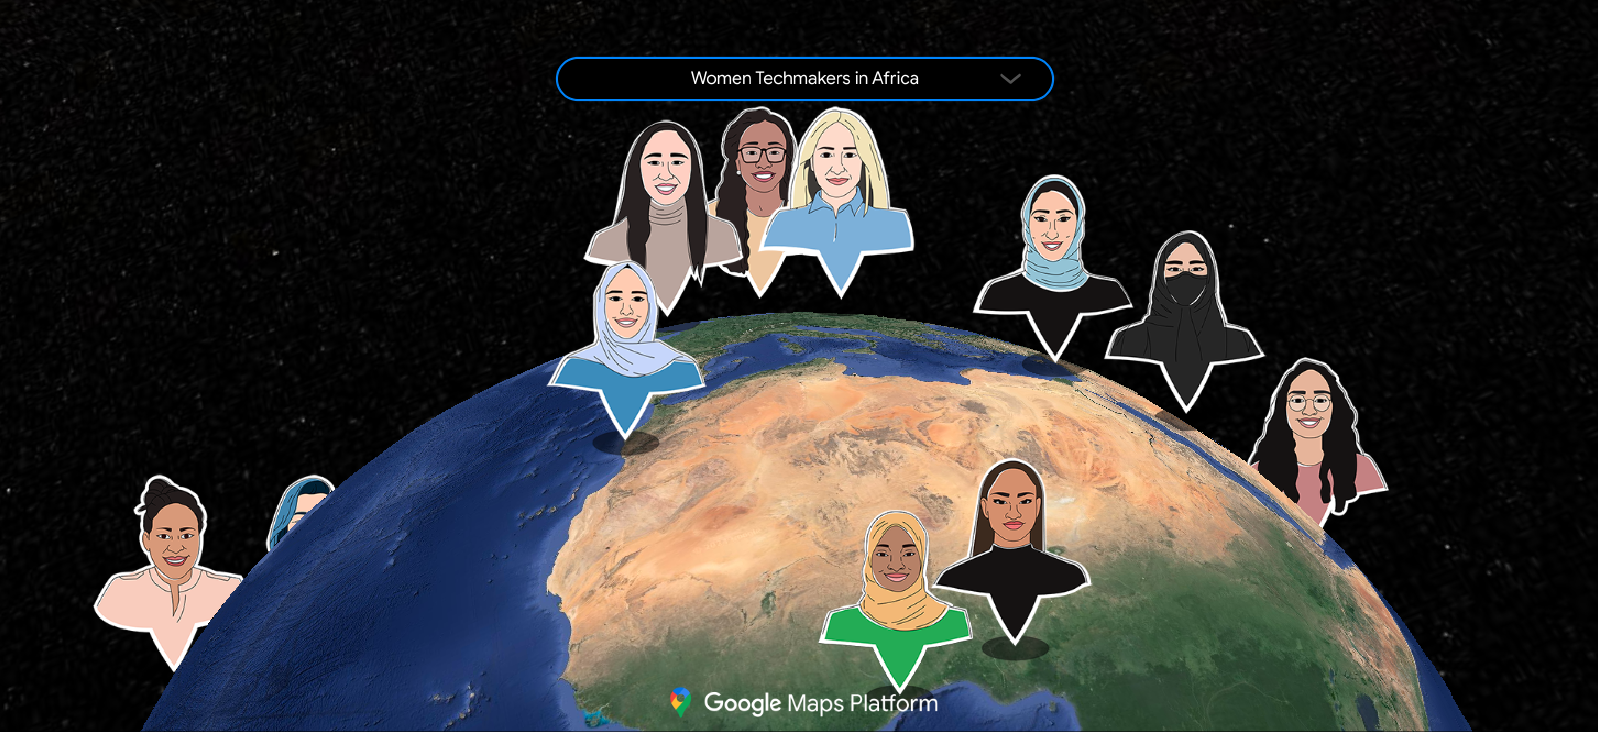 Mapa mostrando a rede global de embaixadoras do programa Women Techmakers, ilustrado como um grupo diverso de pessoas posicionadas em um mapa de acordo com seus respectivos países.